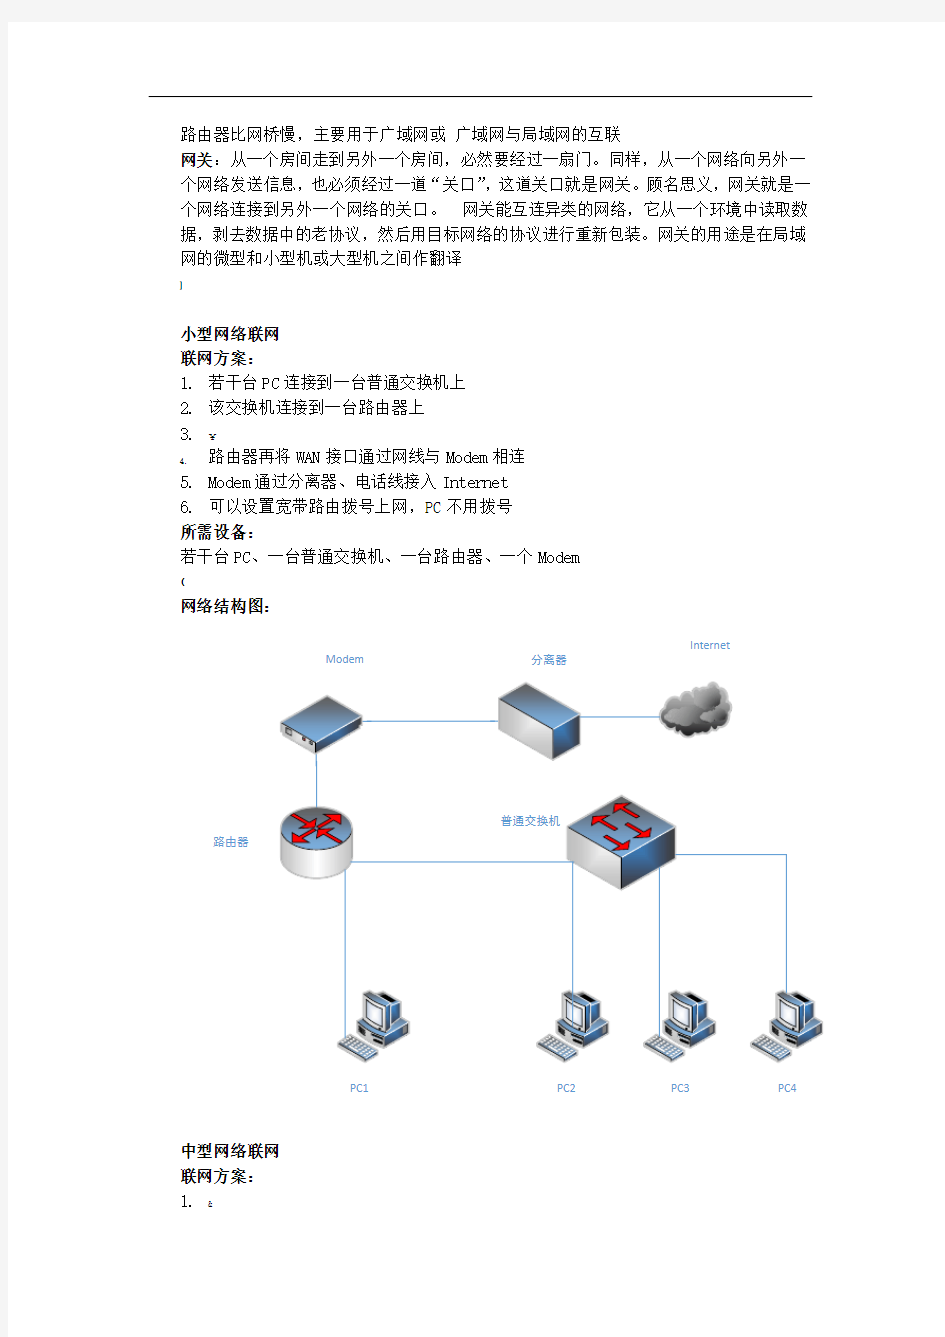 西南交大-计算机网络-课程设计(组网技术)